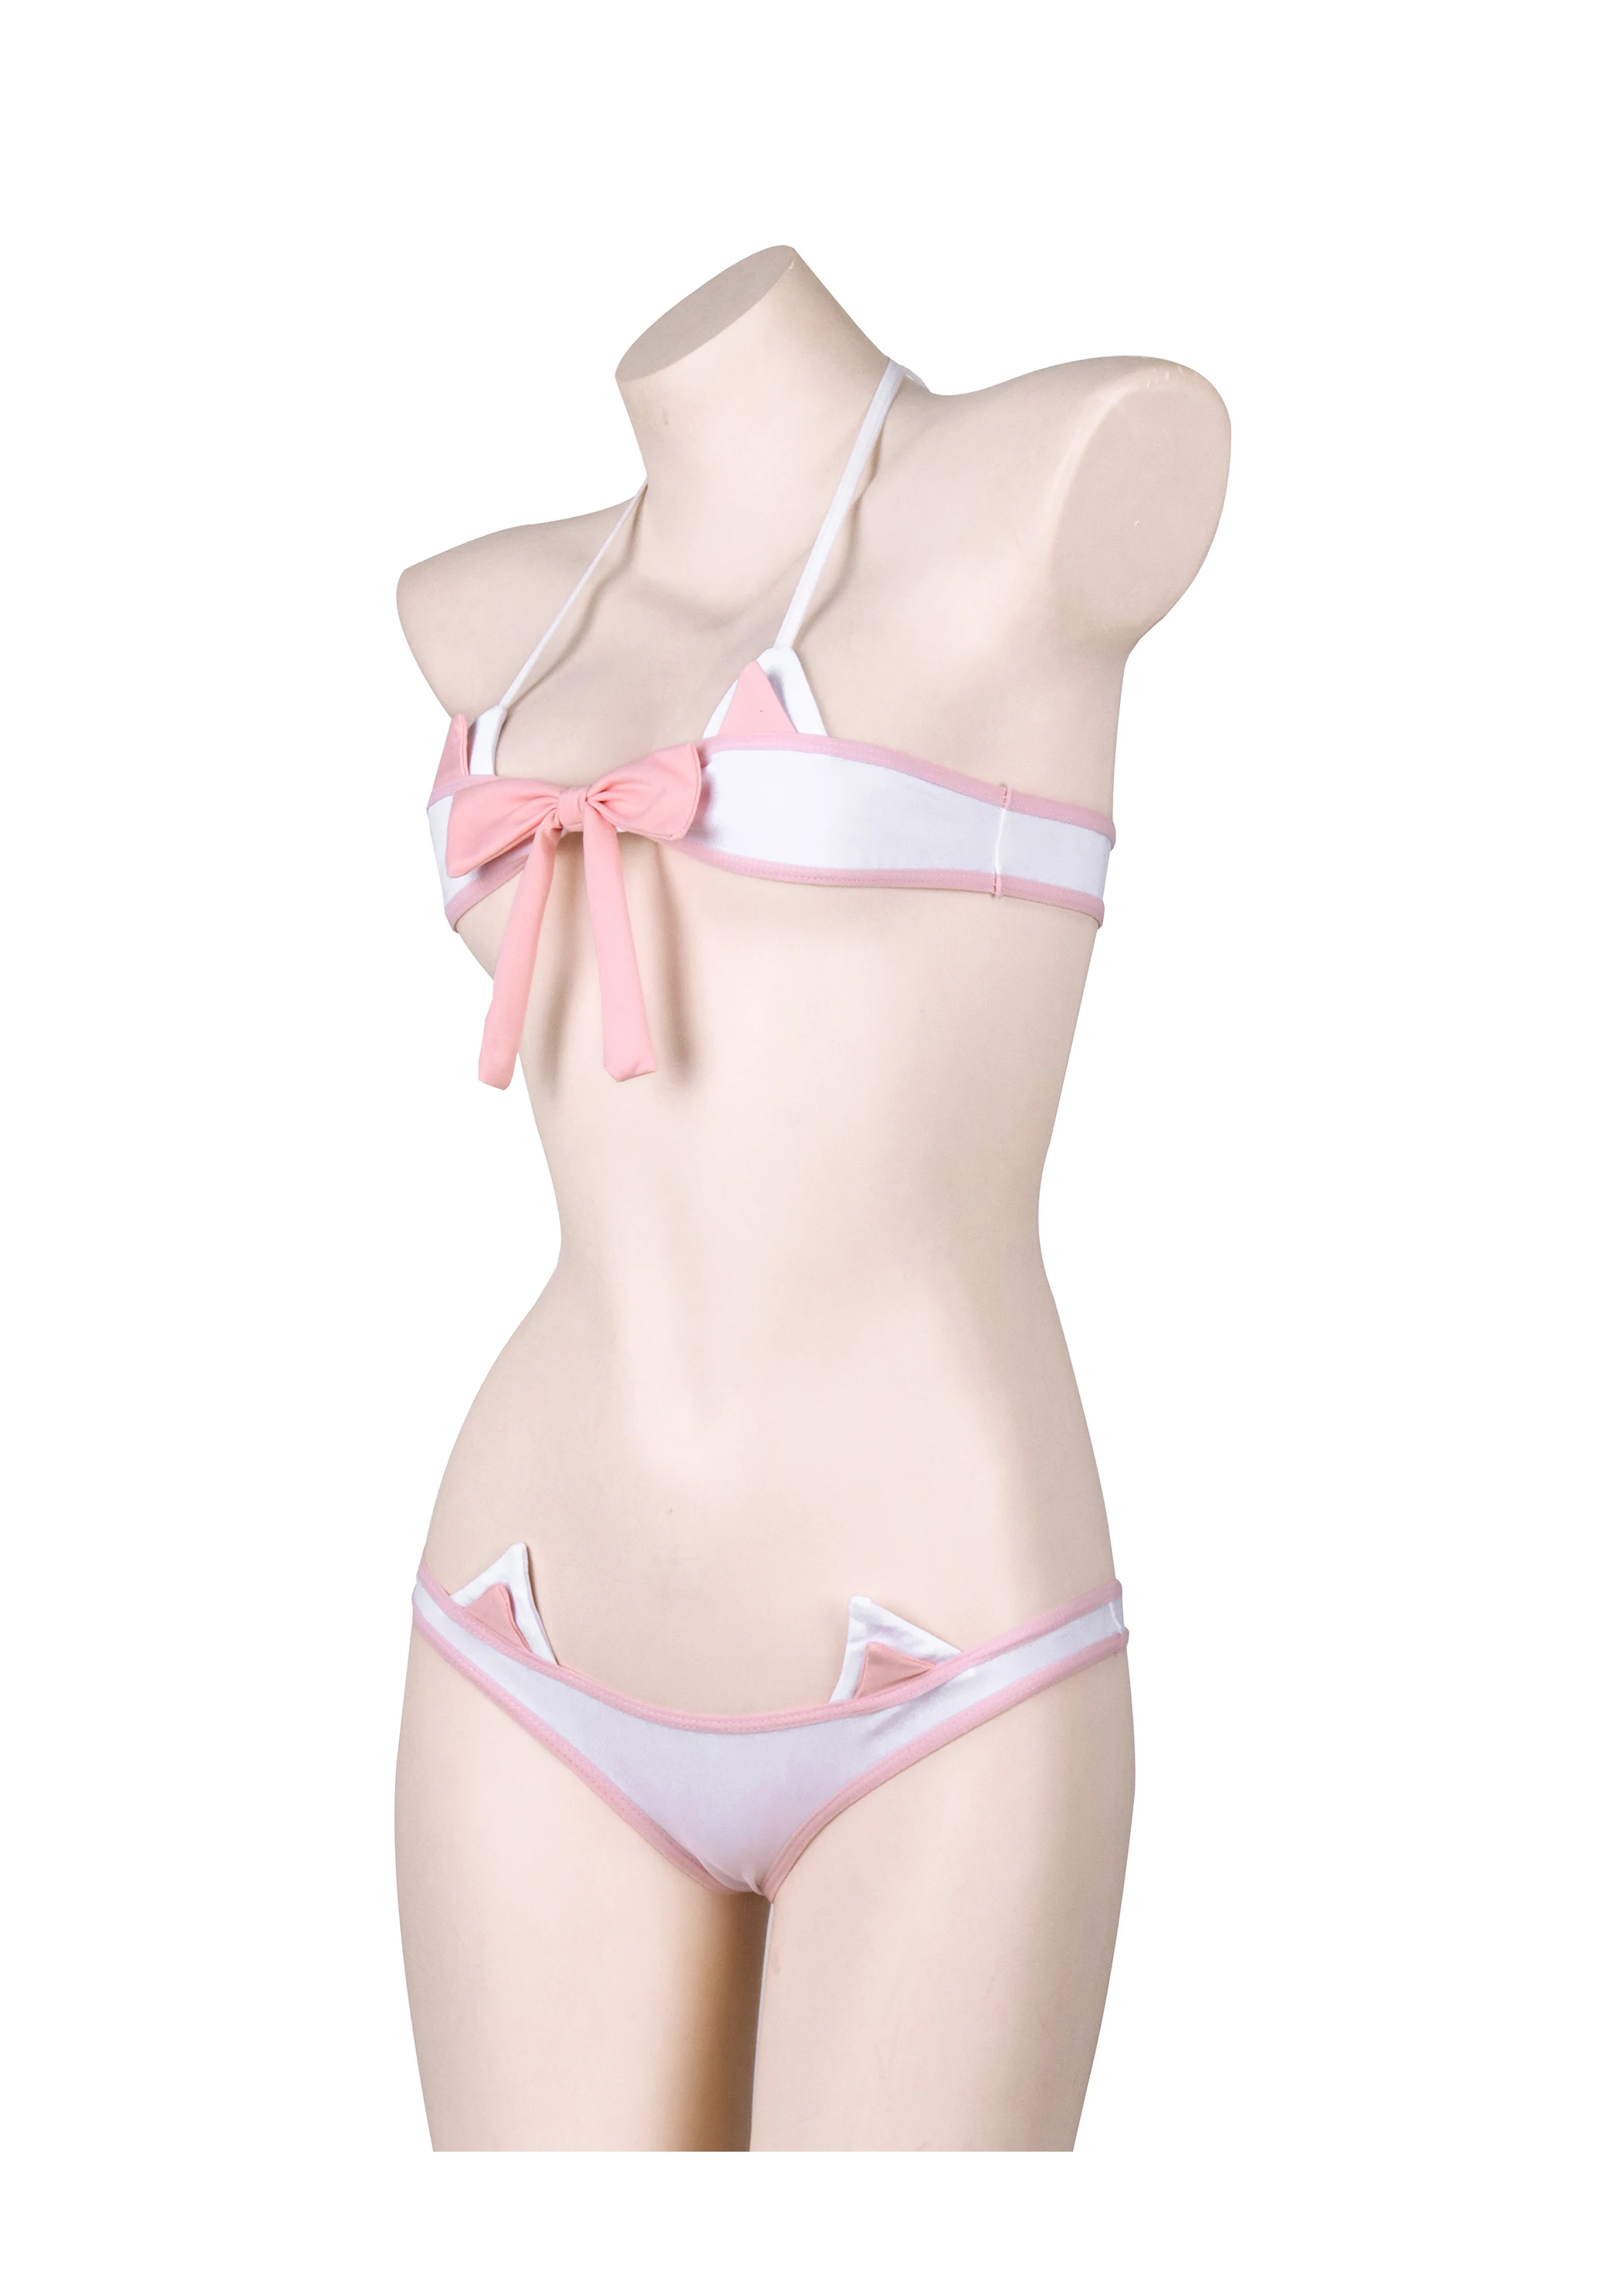 zorra de anime bikini en la: ilustración de stock 2214858159 | Shutterstock-demhanvico.com.vn